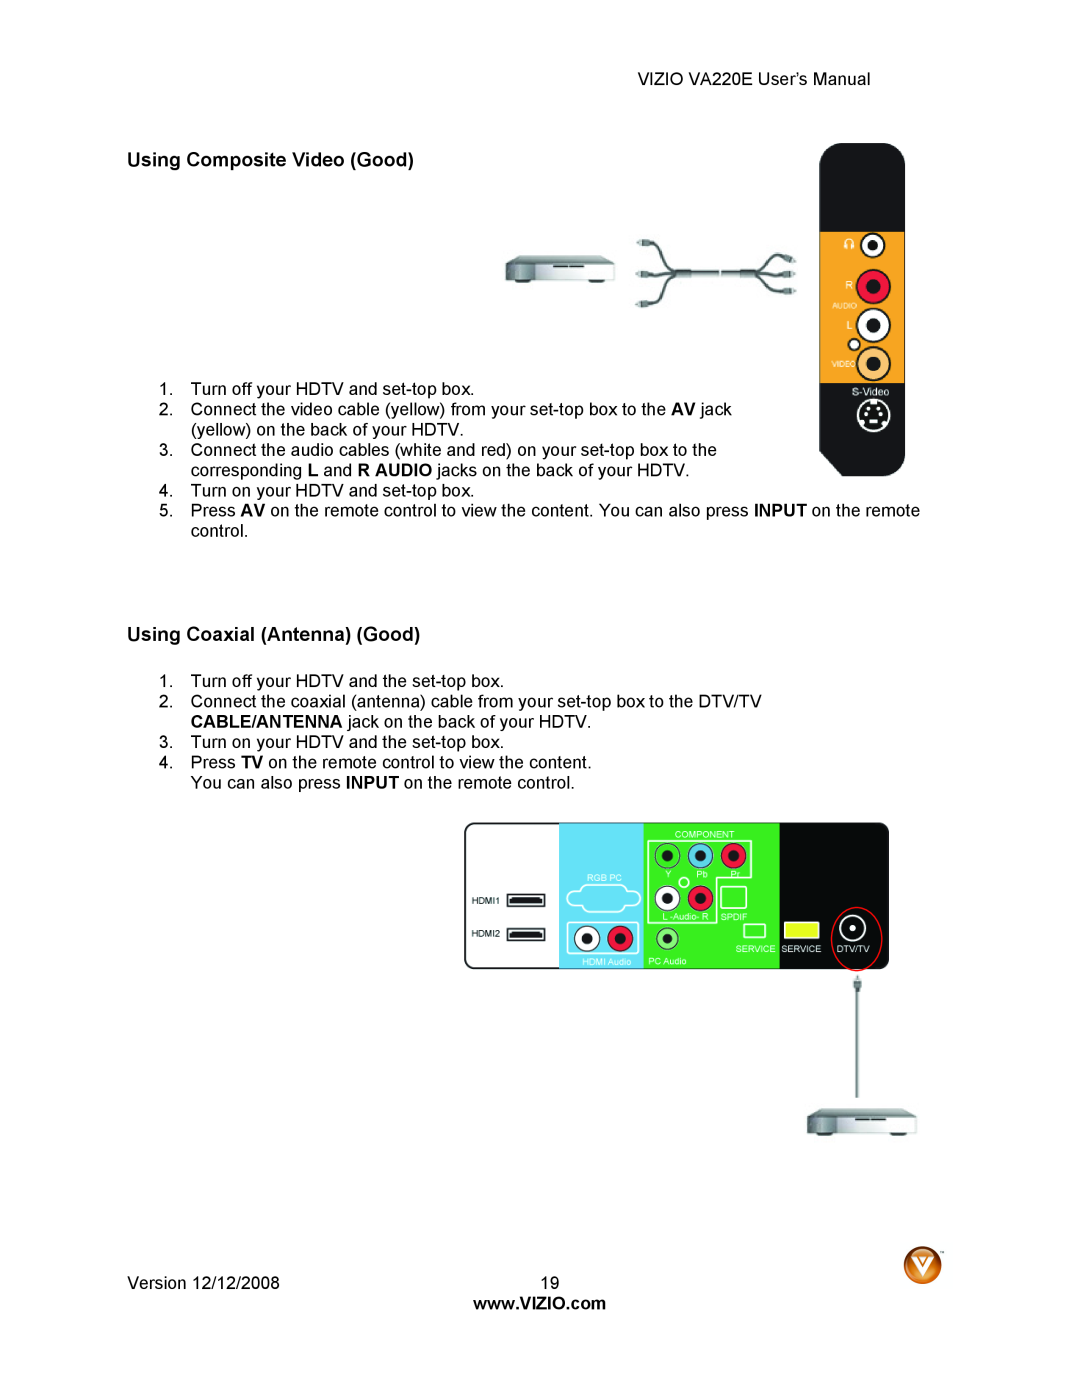 Vizio VA220E user manual Using Composite Video Good, Using Coaxial Antenna Good 